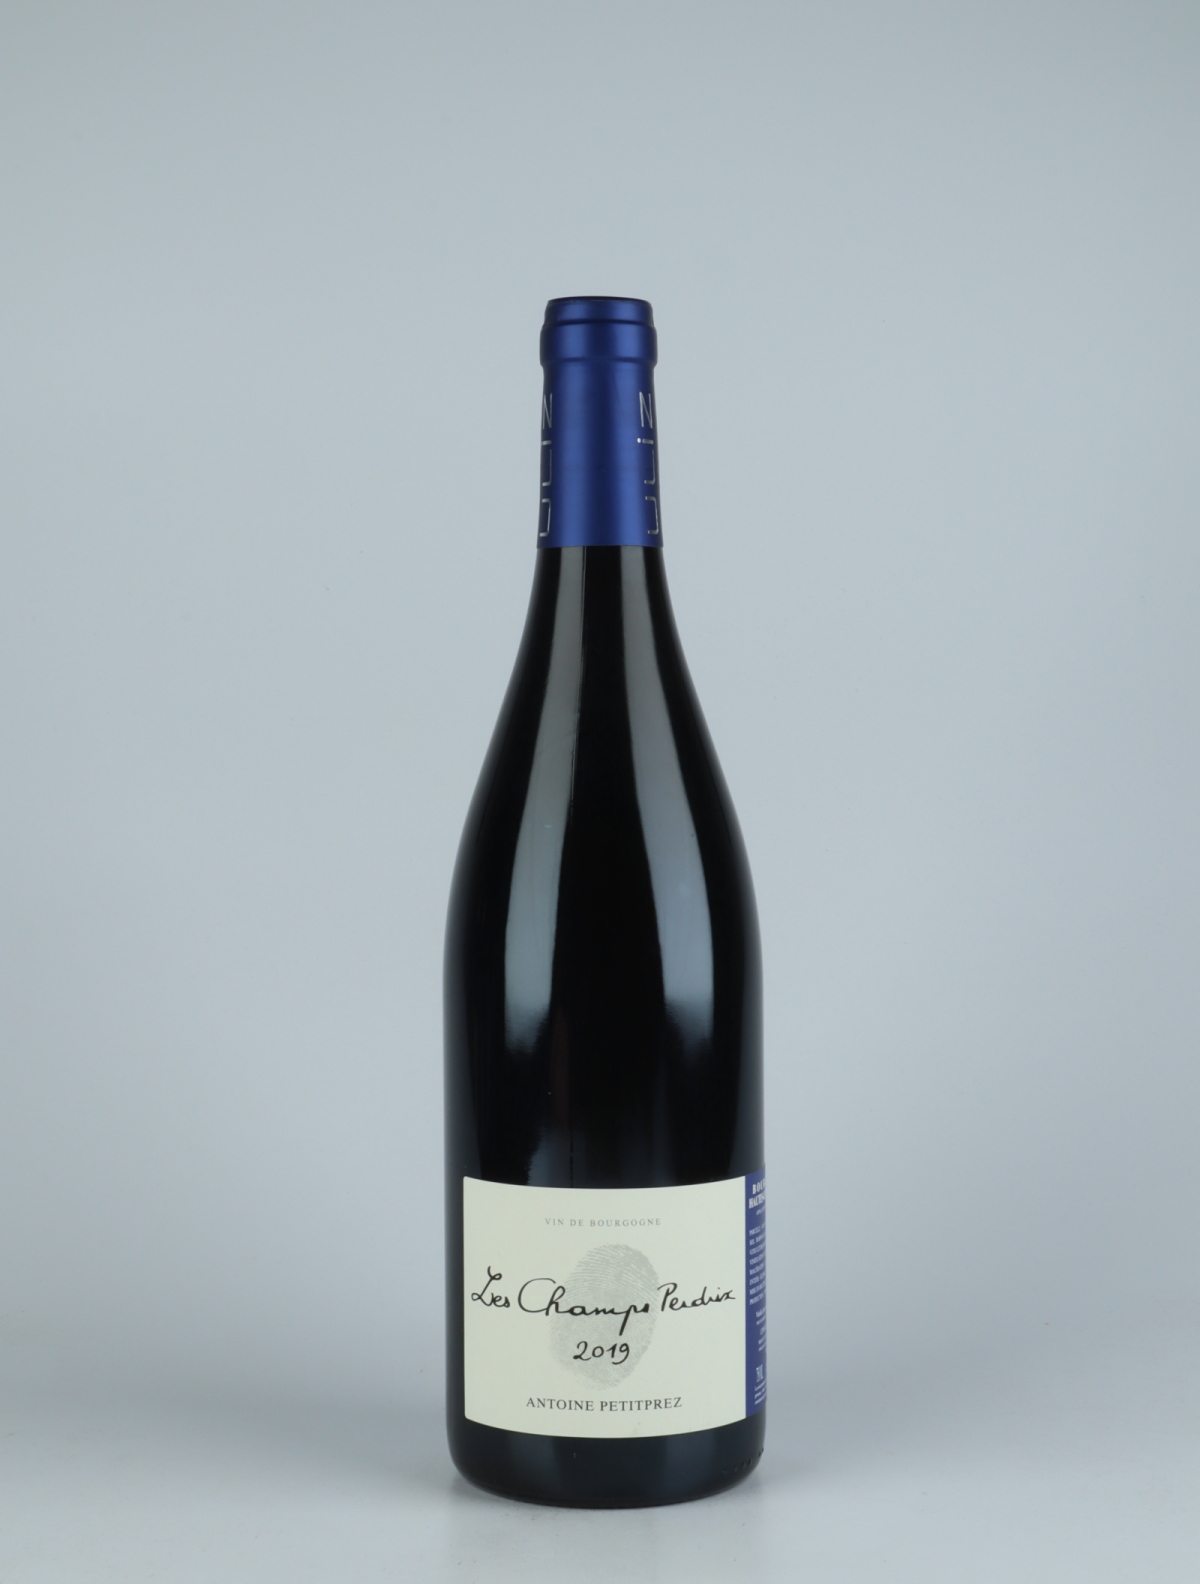 A bottle 2019 Hautes Côtes de Nuits - Les Champs Perdrix Red wine from Antoine Petitprez, Burgundy in France